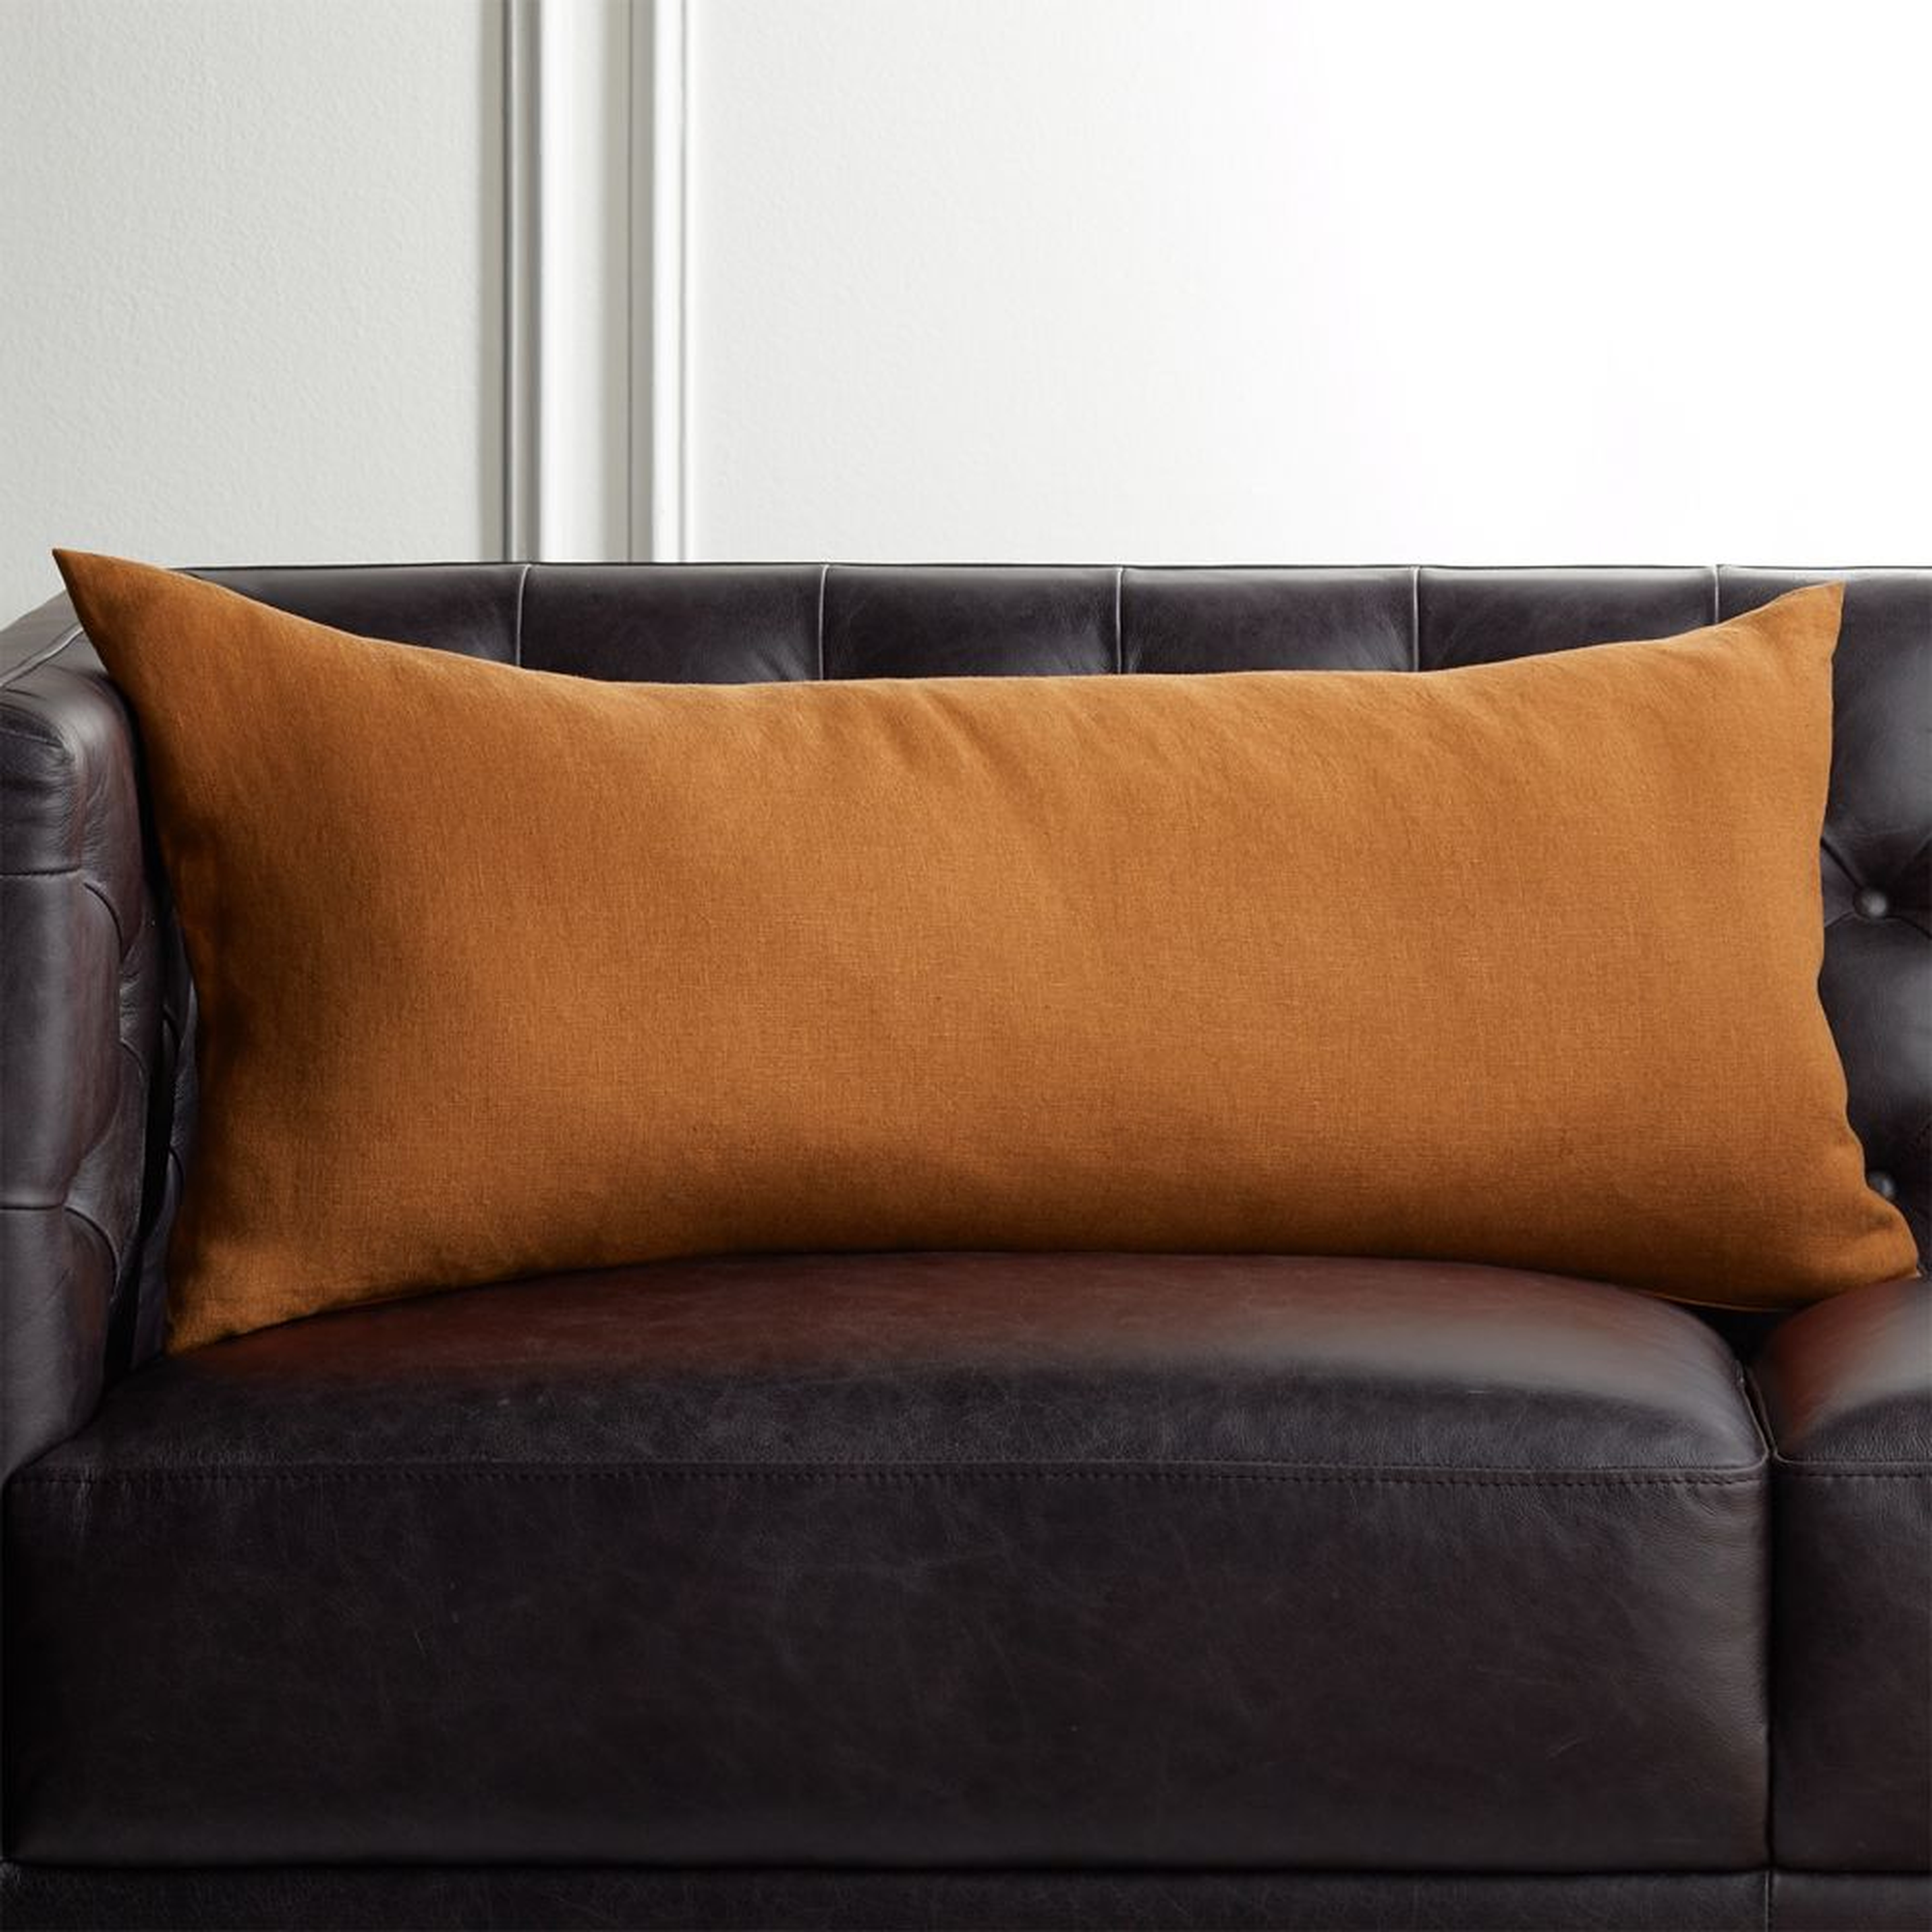 36"x16" Linon Copper Pillow with Down-Alternative Insert - CB2